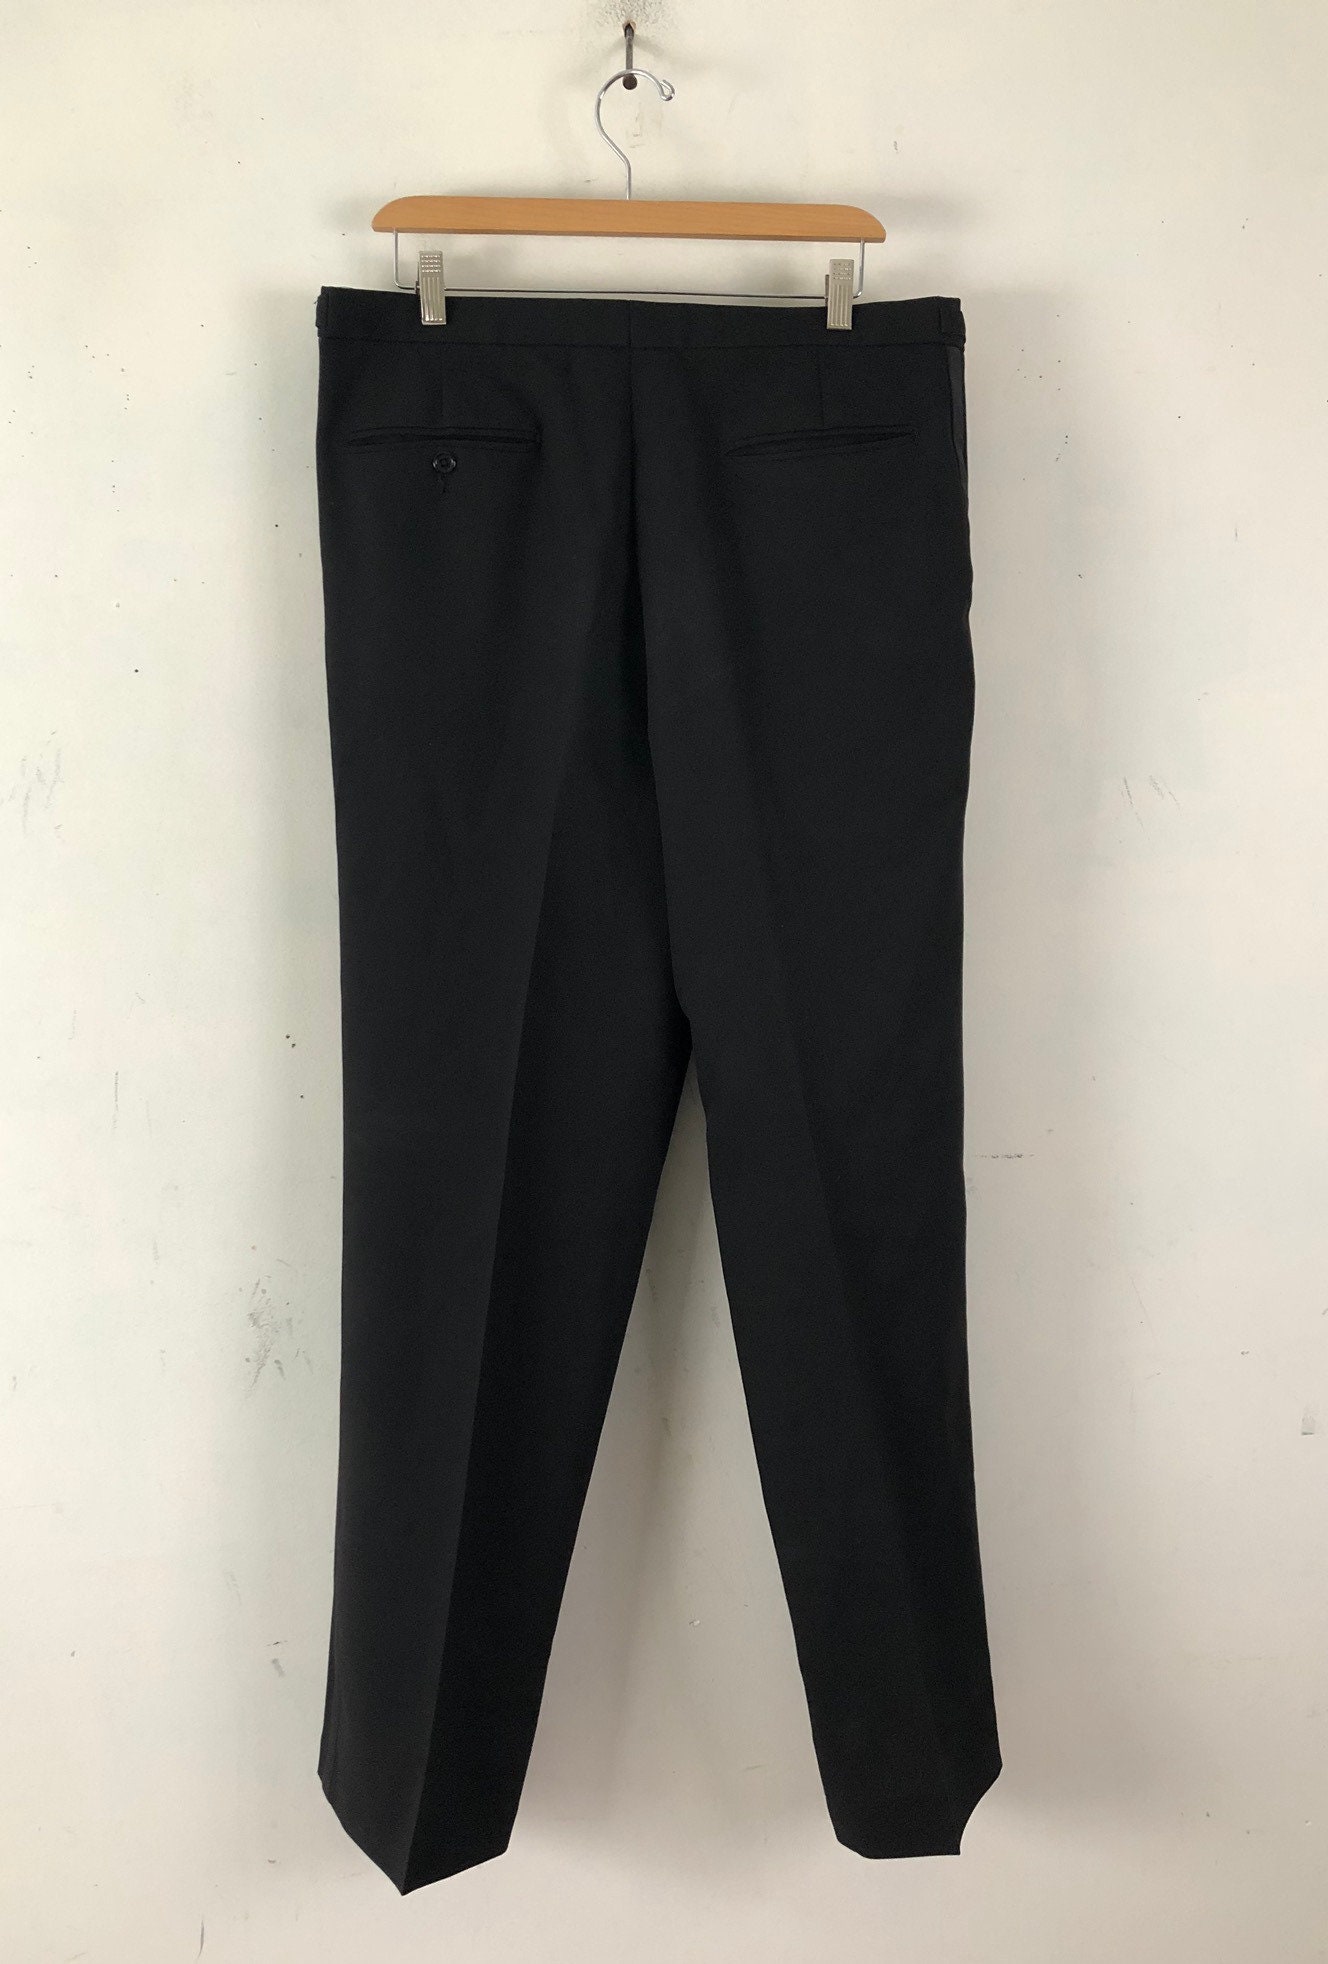 Vintage Mens Tuxedo Suit 90s Black Wool Suit Coat & Pants | Etsy